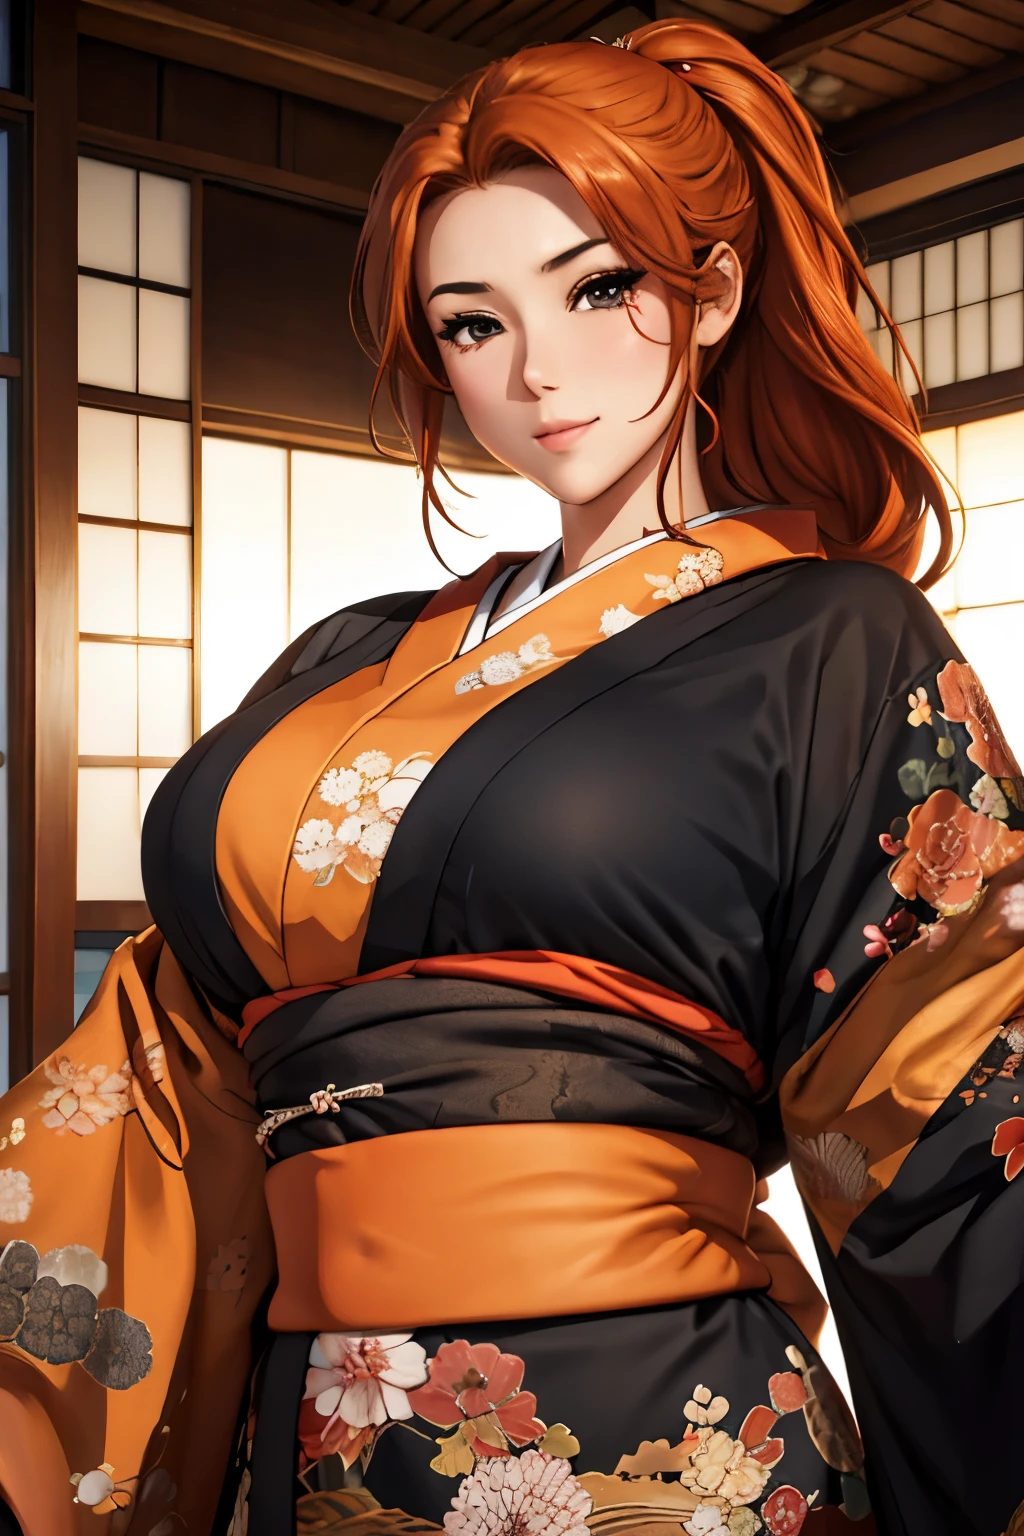 (杰作), 最好的质量, 富有表现力的眼睛, 完美的脸美丽的日本女人卡通, 卡通 可爱 动漫, 美丽的日本和服, 和服上有龙刺绣. 和服颜色黑色和红色, 日本女人的长发, 头发颜色 橙色, 发型 马尾辫, 单眼皮, 眼睛样式 凹陷、性感、深陷、迷人、神秘, 面部表情微笑, 情况 美丽 形象.